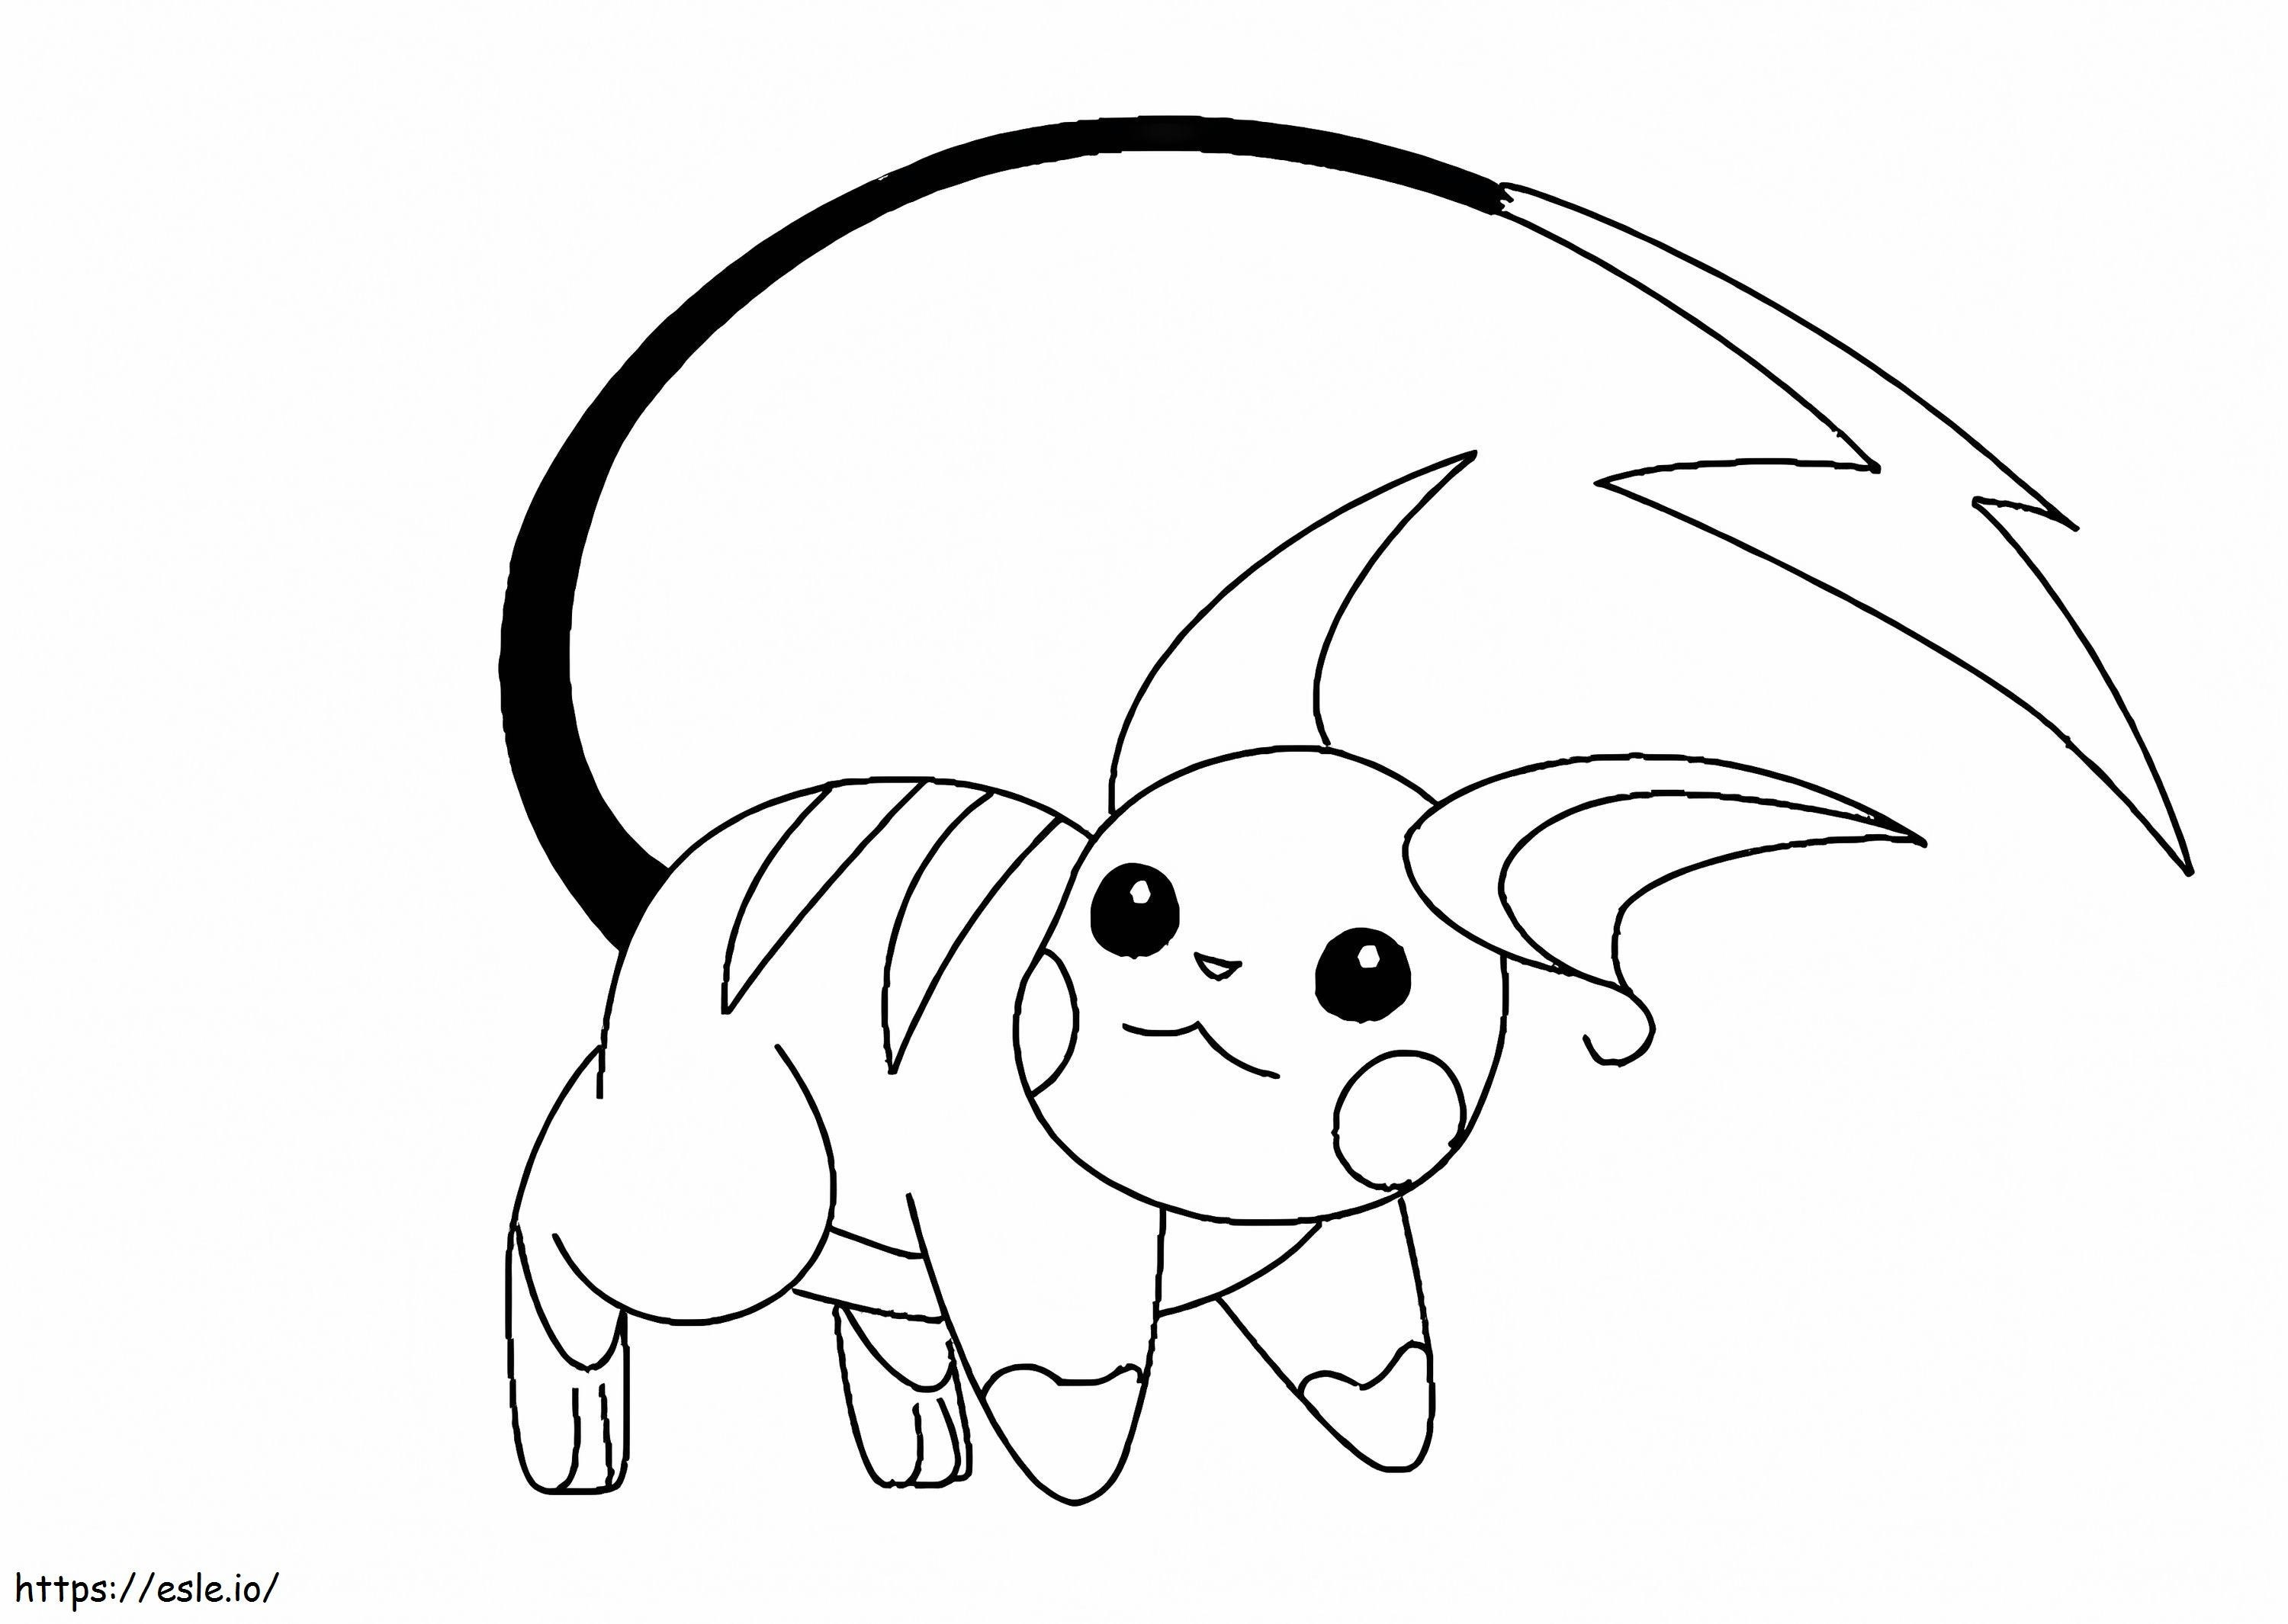 Coloriage Pokemon Raichu 5 à imprimer dessin